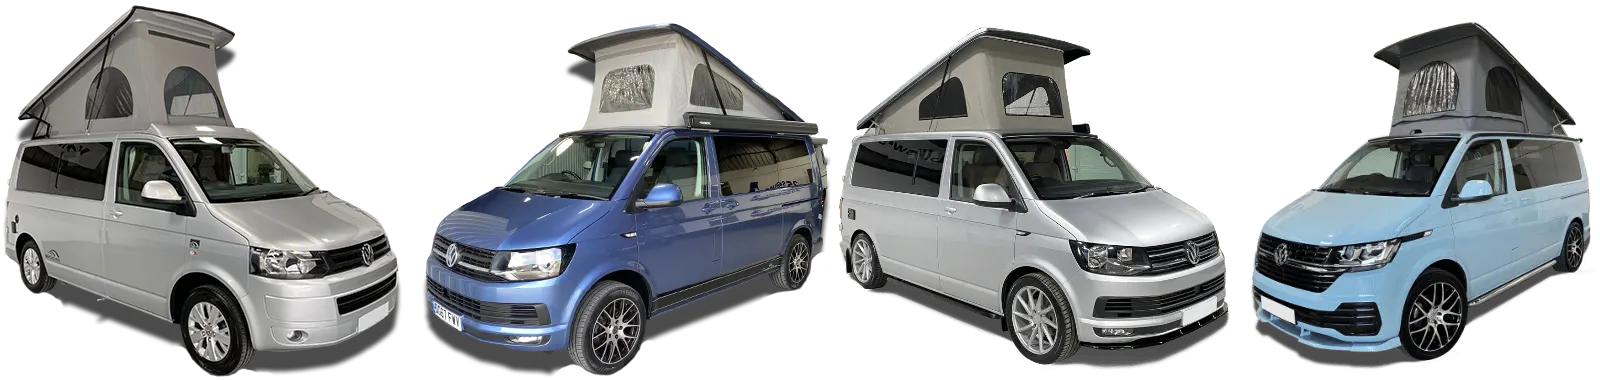 VW-Camper-Vans-for-Sale-Banner-Rev3